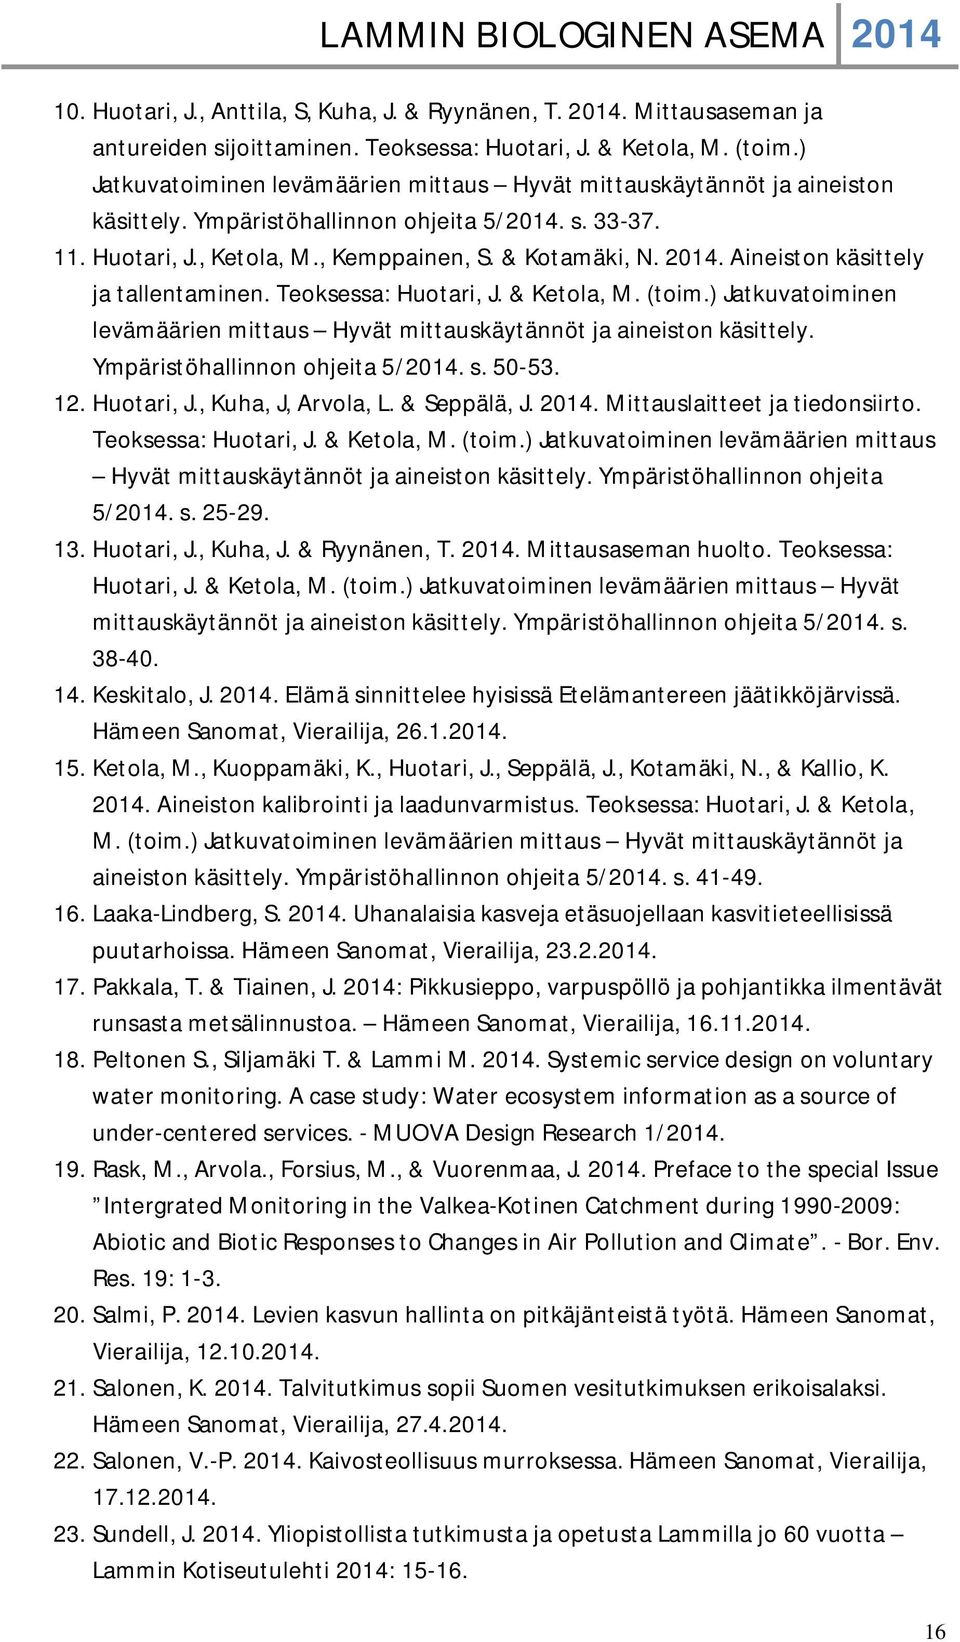 Aineiston käsittely ja tallentaminen. Teoksessa: Huotari, J. & Ketola, M. (toim.) Jatkuvatoiminen levämäärien mittaus Hyvät mittauskäytännöt ja aineiston käsittely. Ympäristöhallinnon ohjeita 5/2014.